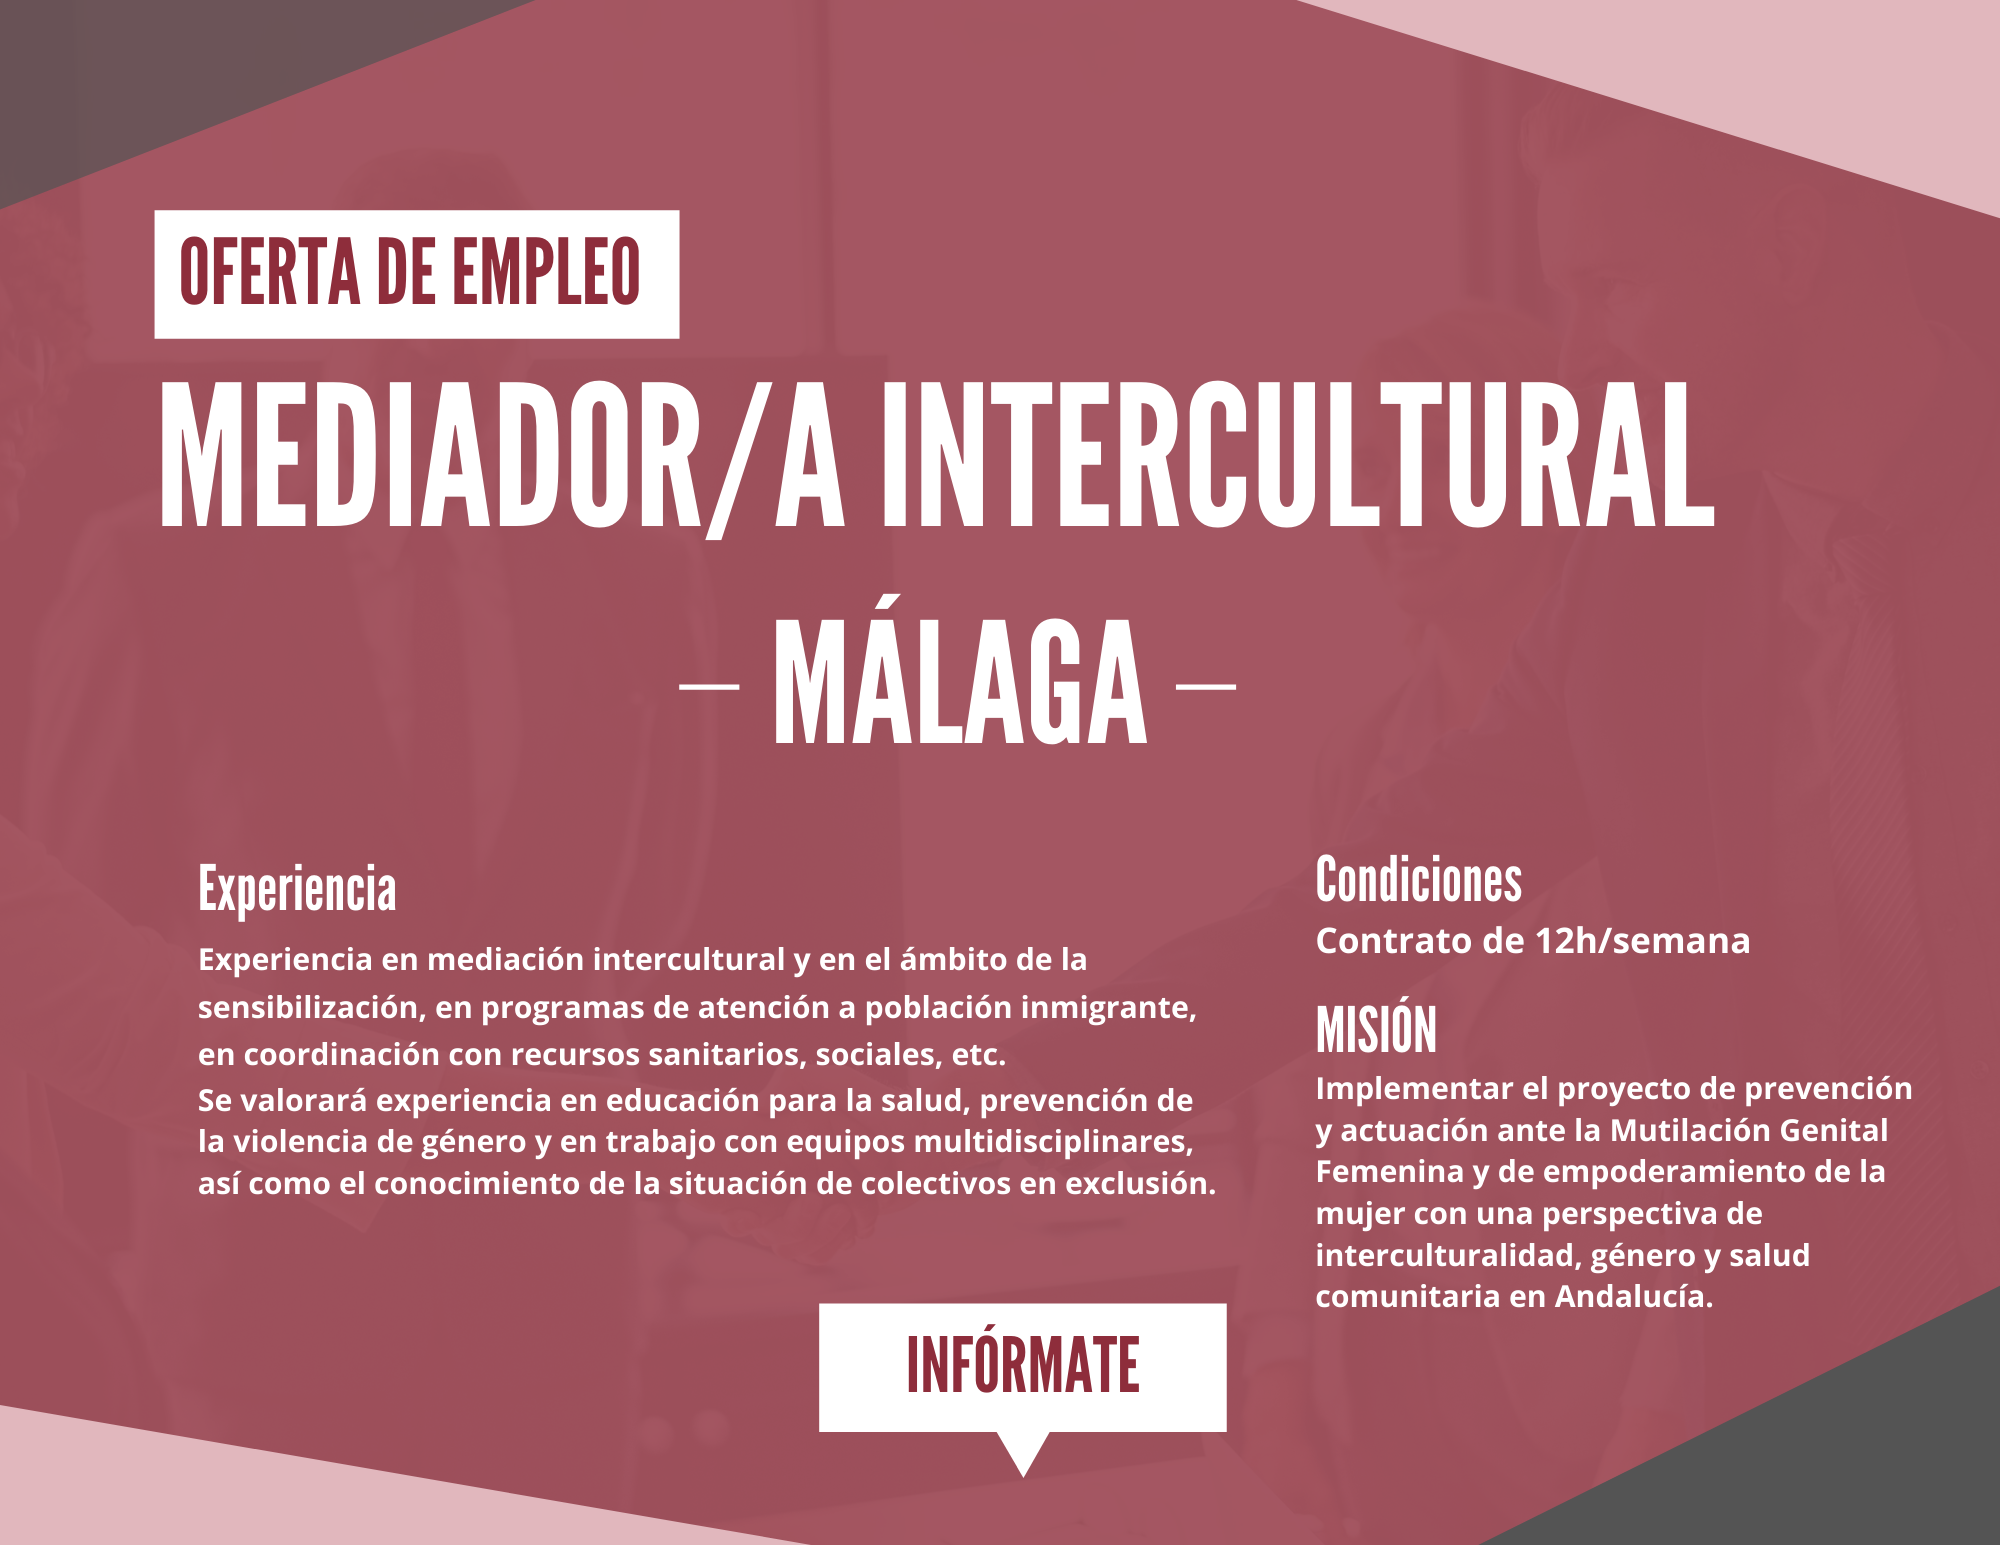 mediador intercultural oferta de empleo malaga